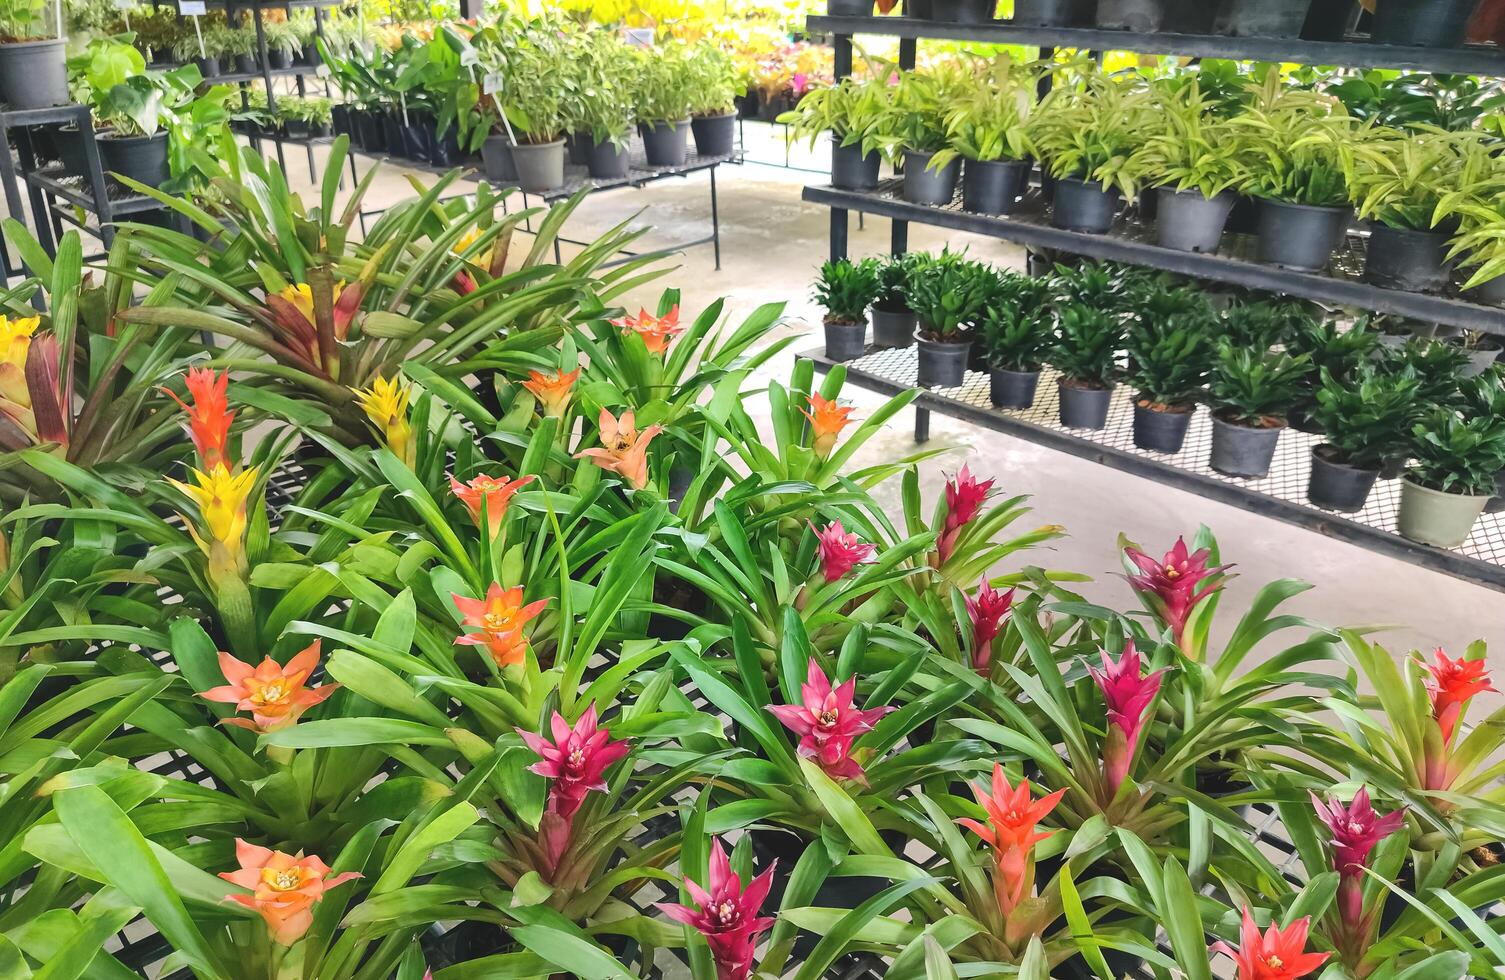 foco às grupo do colorida bromélia flores em primeiro plano com borrado vários ornamental plantas em prateleiras exibição para venda dentro ao ar livre plantar mercado foto